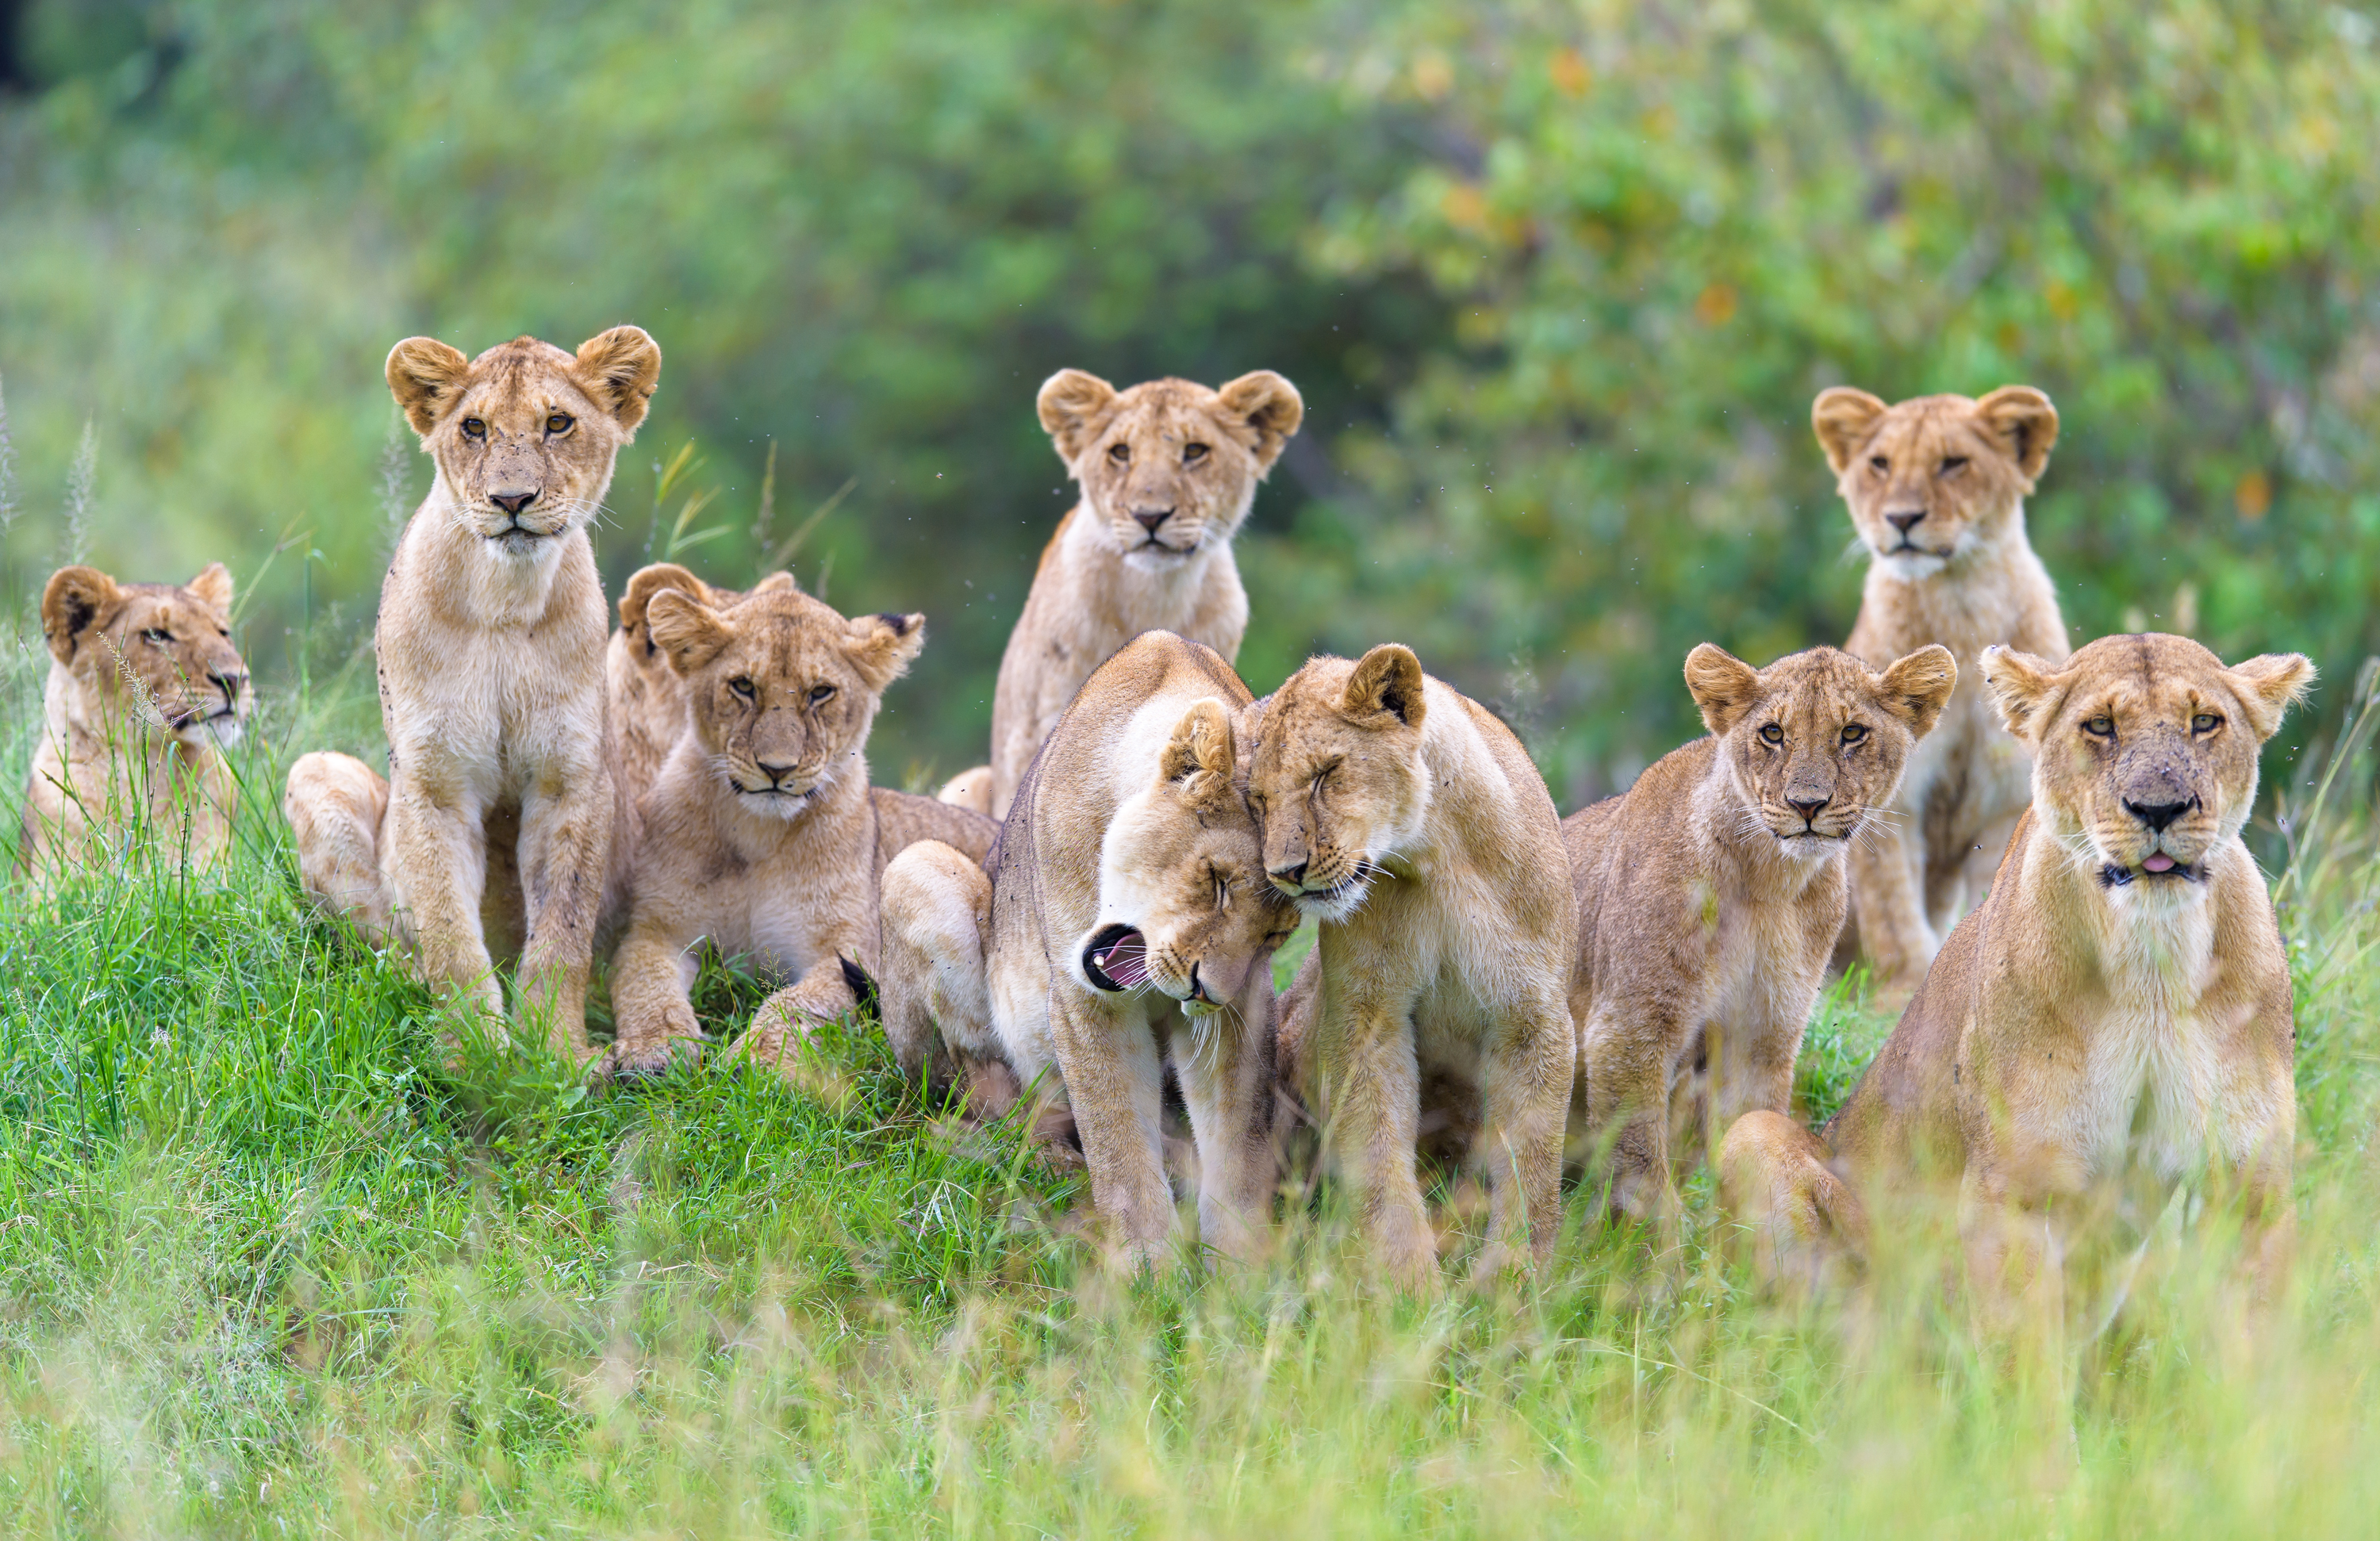 A pride of lions in Kenya